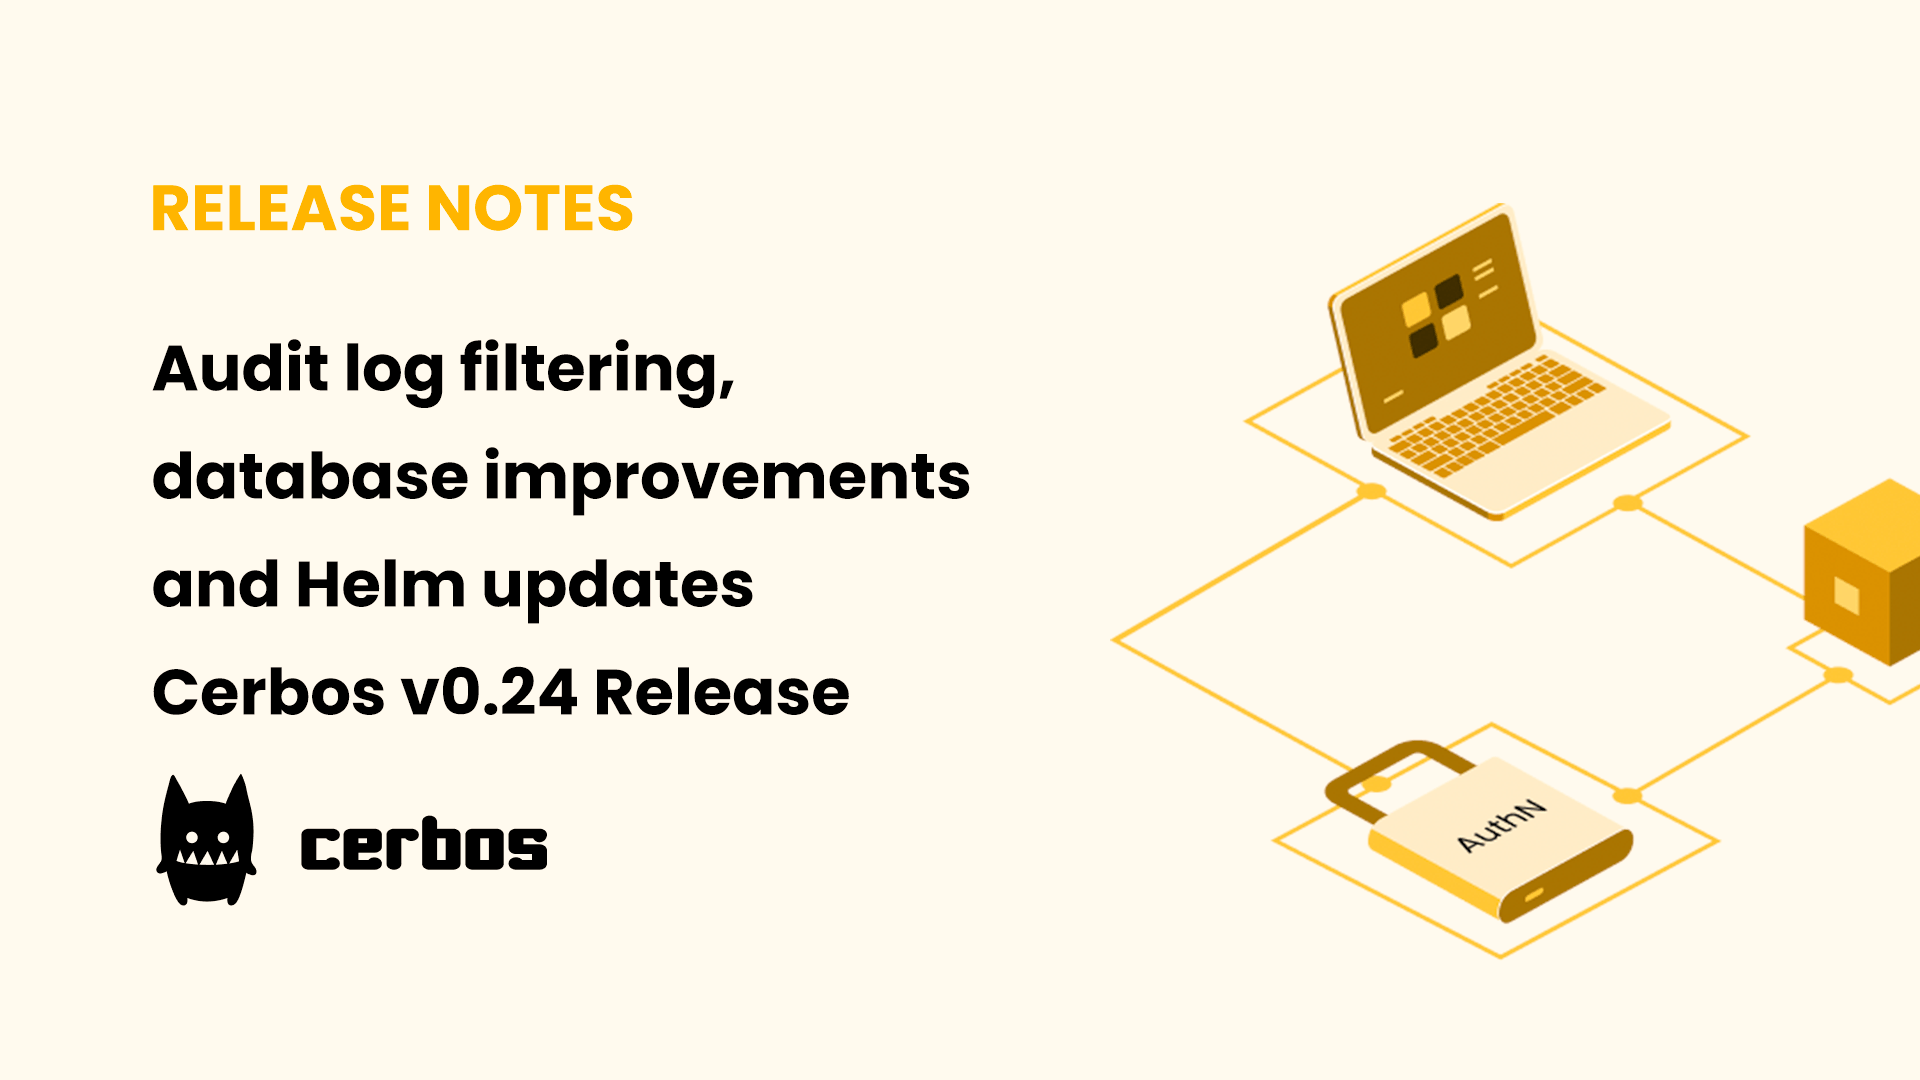 Audit log filtering, database improvements and Helm updates - Cerbos v0.24 Release